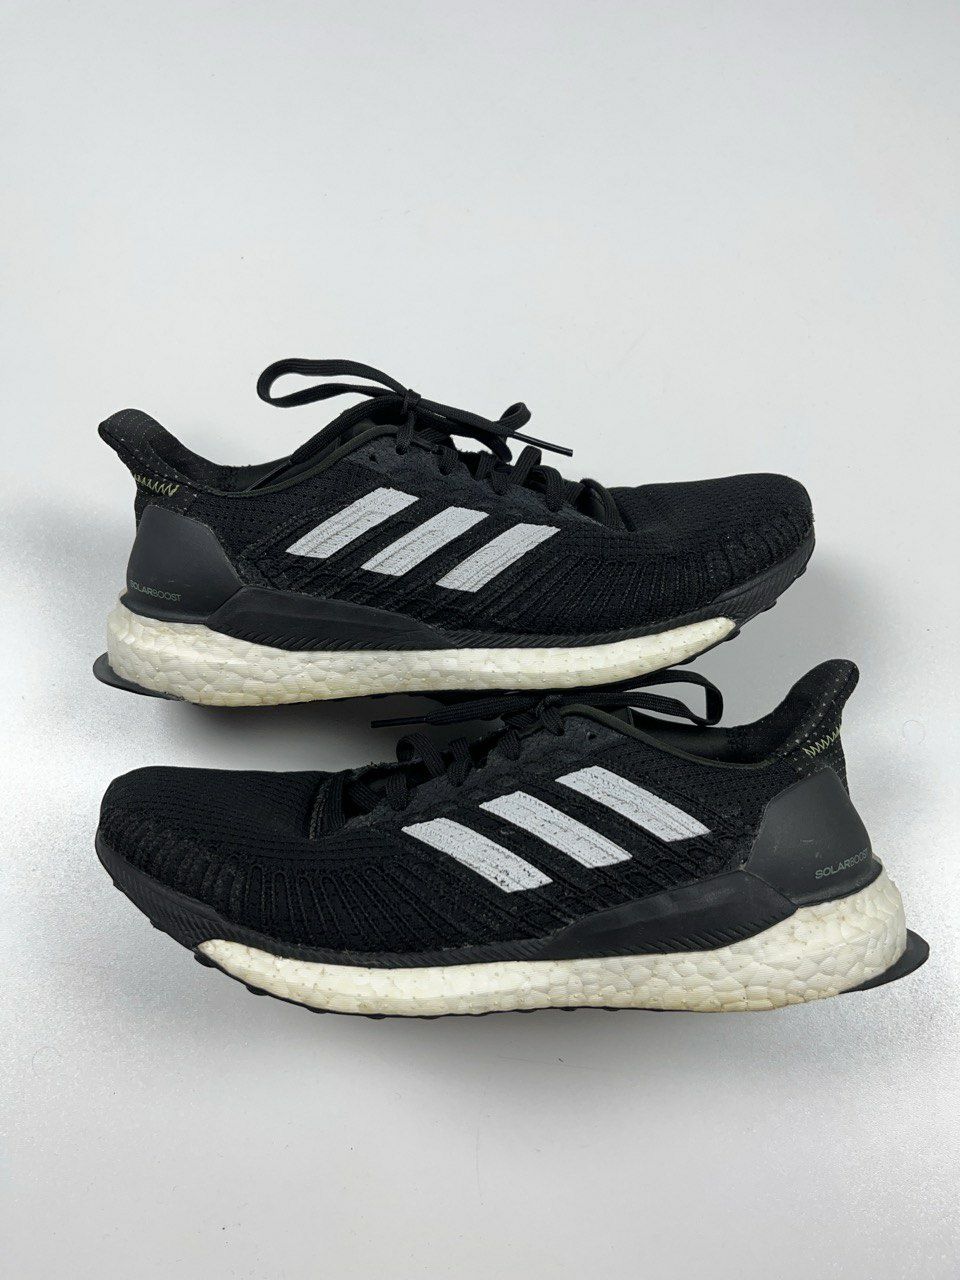 Adidas Solar Boost 19 оригинальные кроссовки размер 41